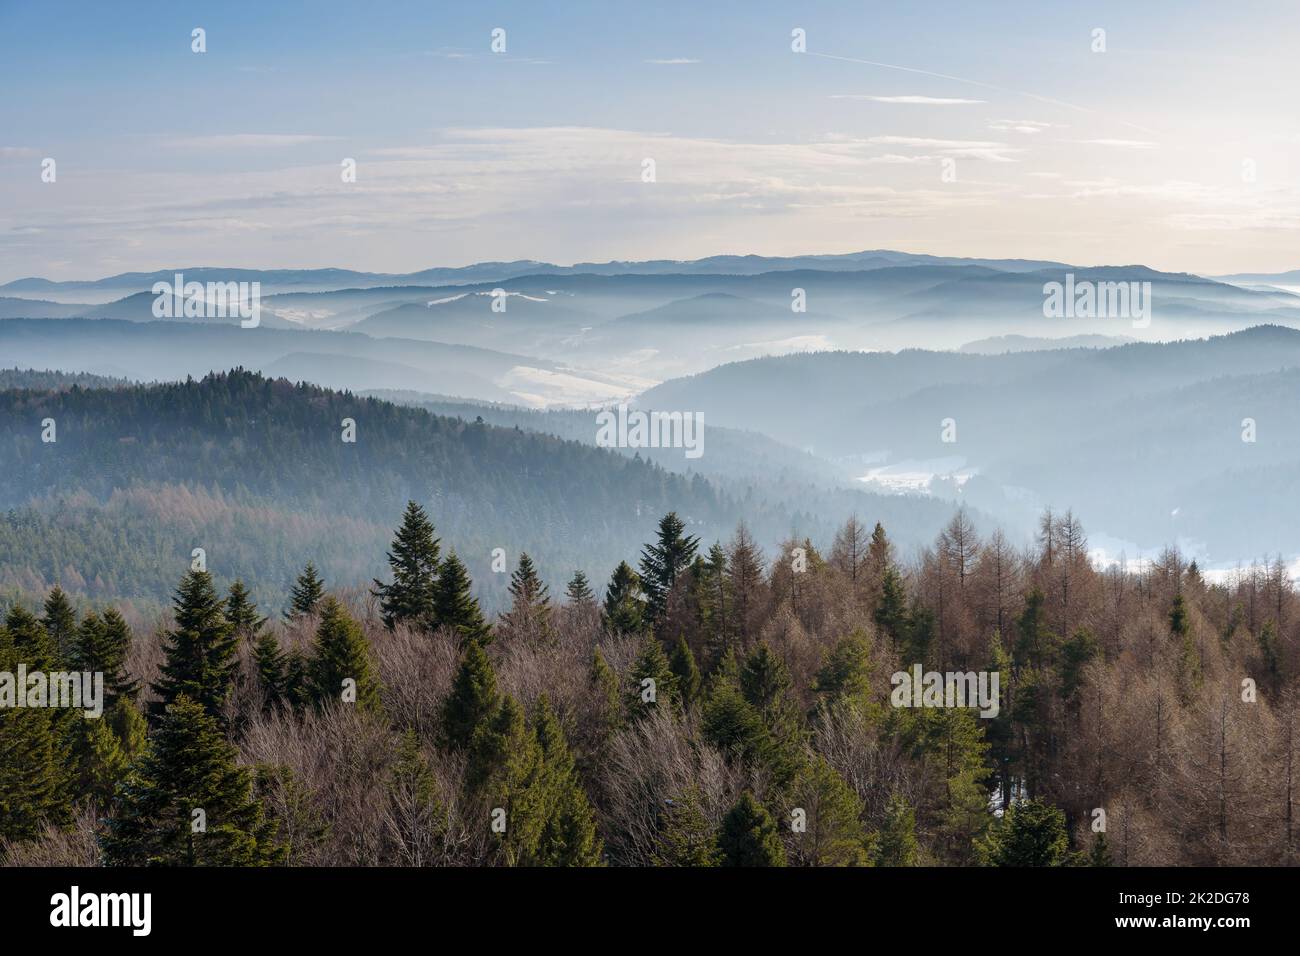 Foggy view of Beskid Sadecki mountain range in Poland Stock Photo